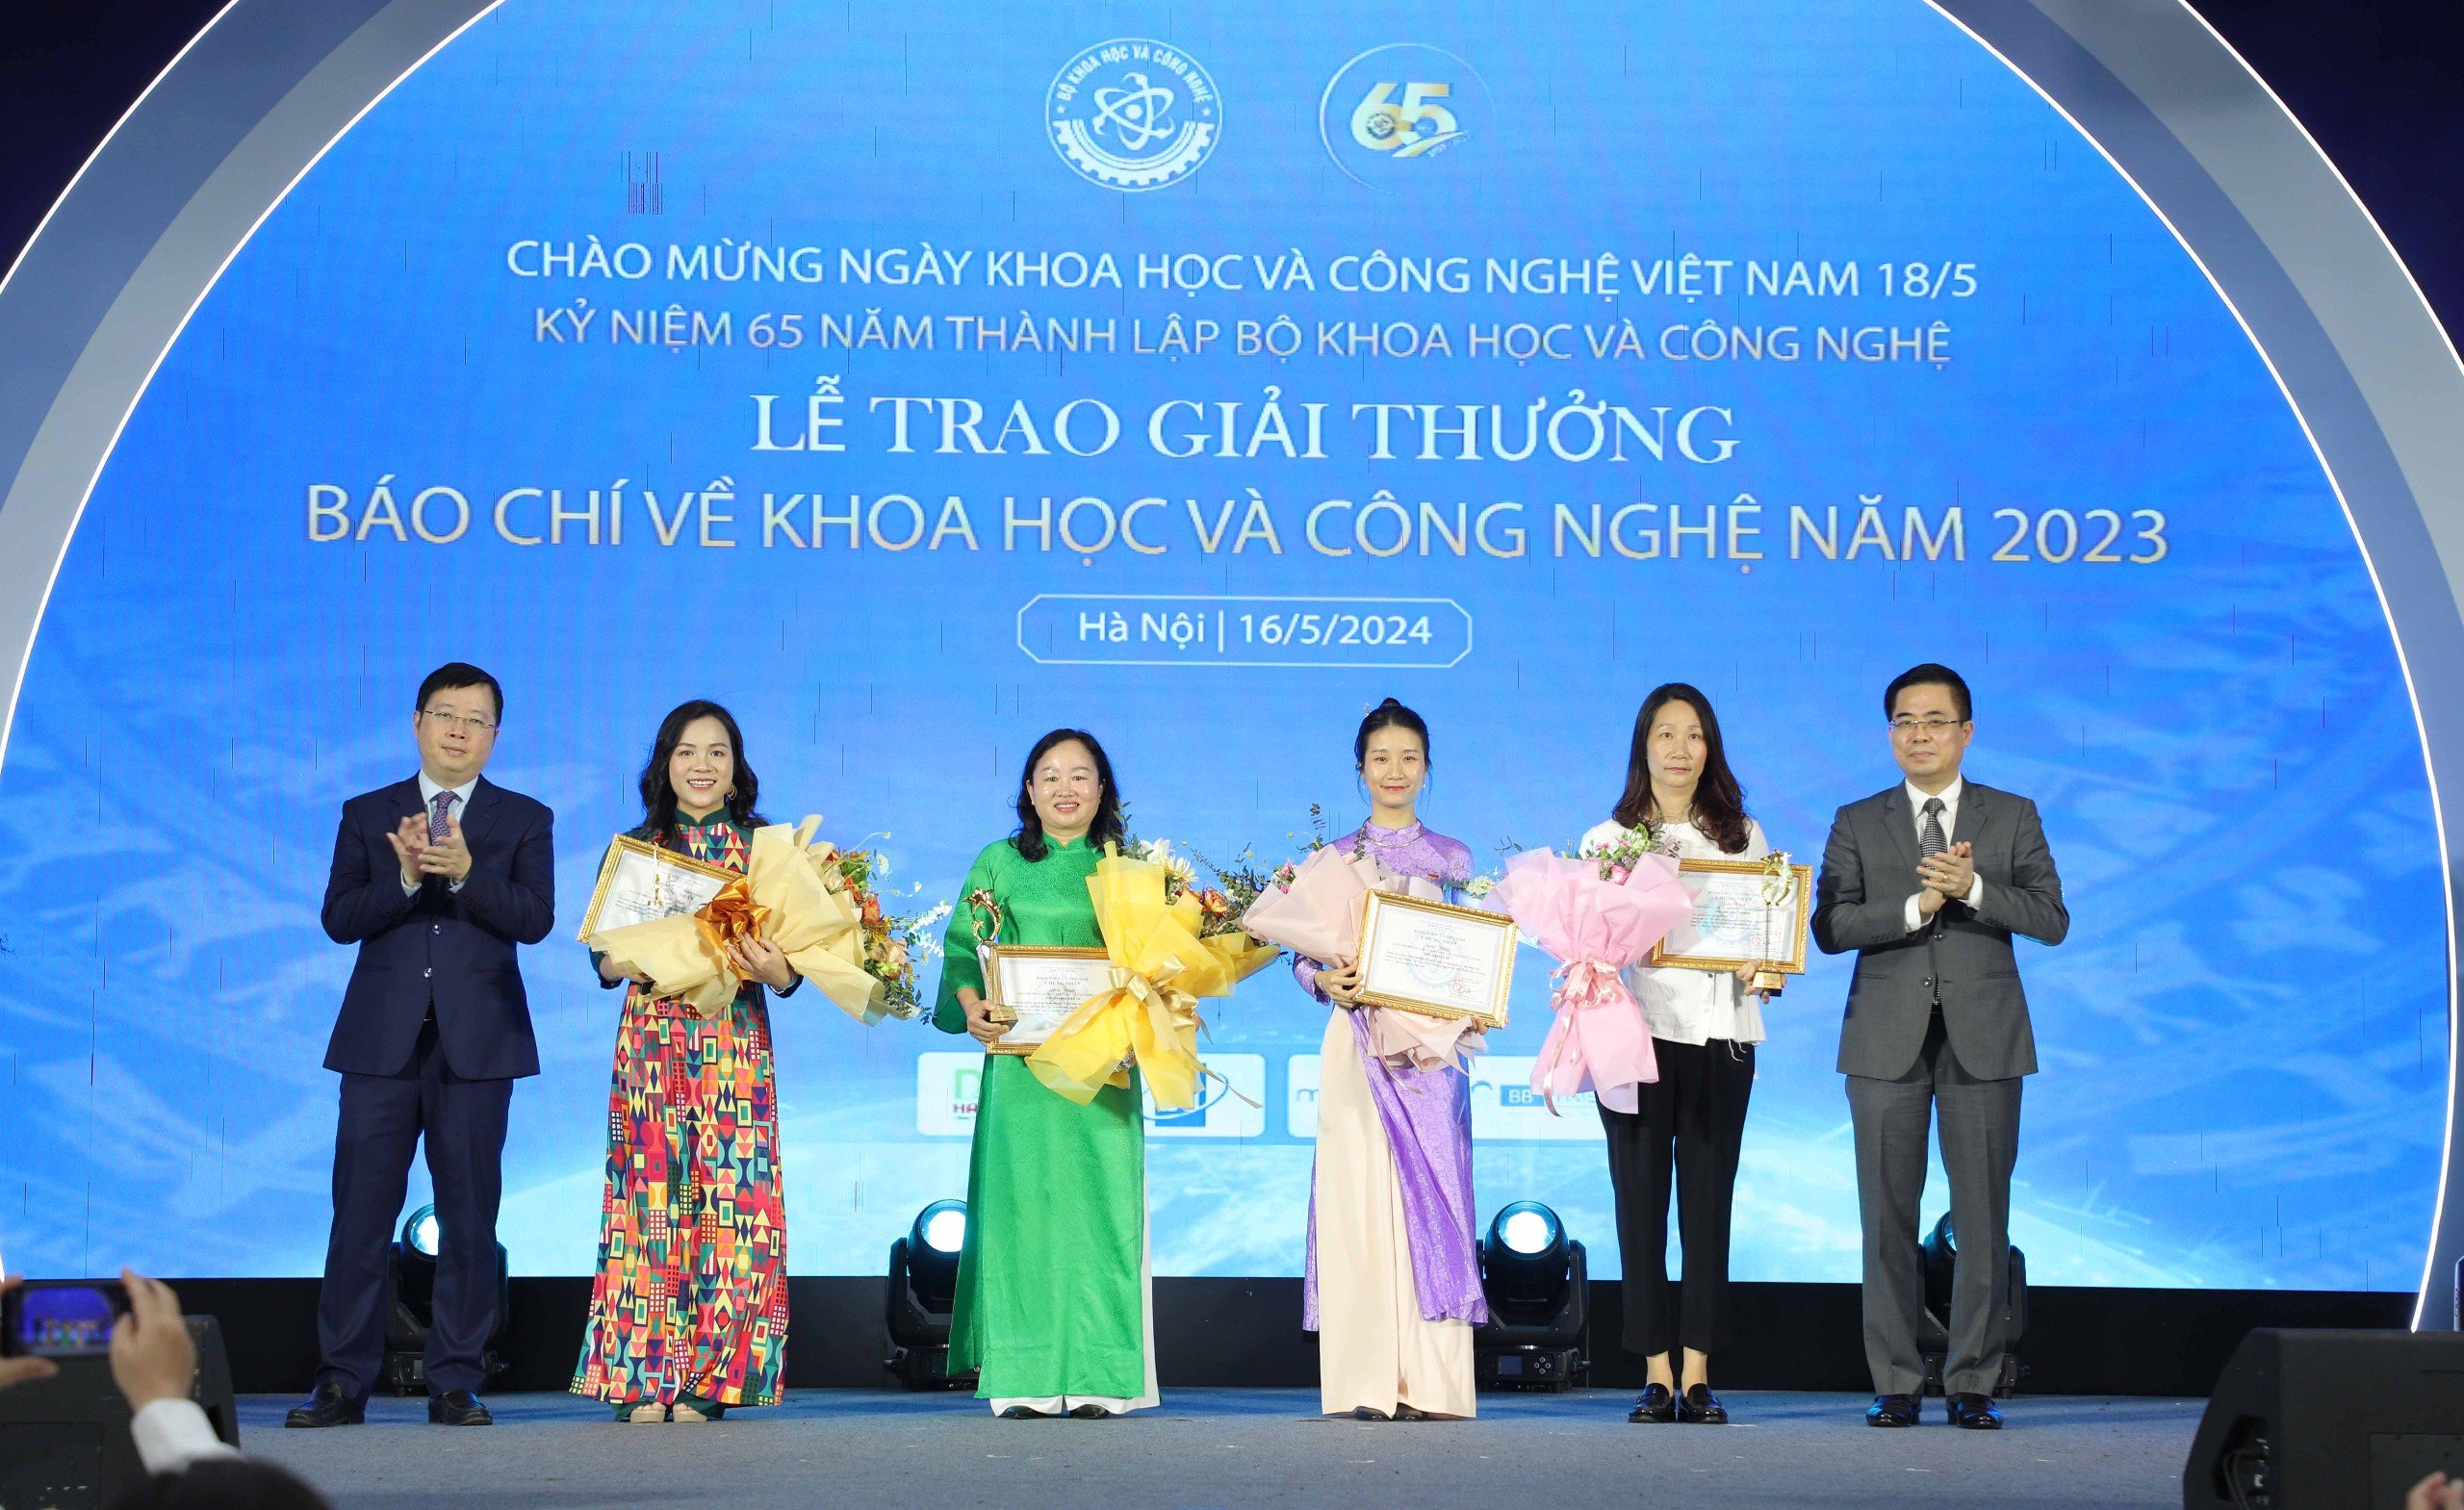 Thứ trưởng Bộ KH&CN Nguyễn Hoàng Giang (ngoài cùng bên phải) và Thứ trưởng Bộ TT&TT Nguyễn Thanh Lâm (ngoài cùng bên trái) trao giải Nhất cho các tác giả, đại diện nhóm tác giả.